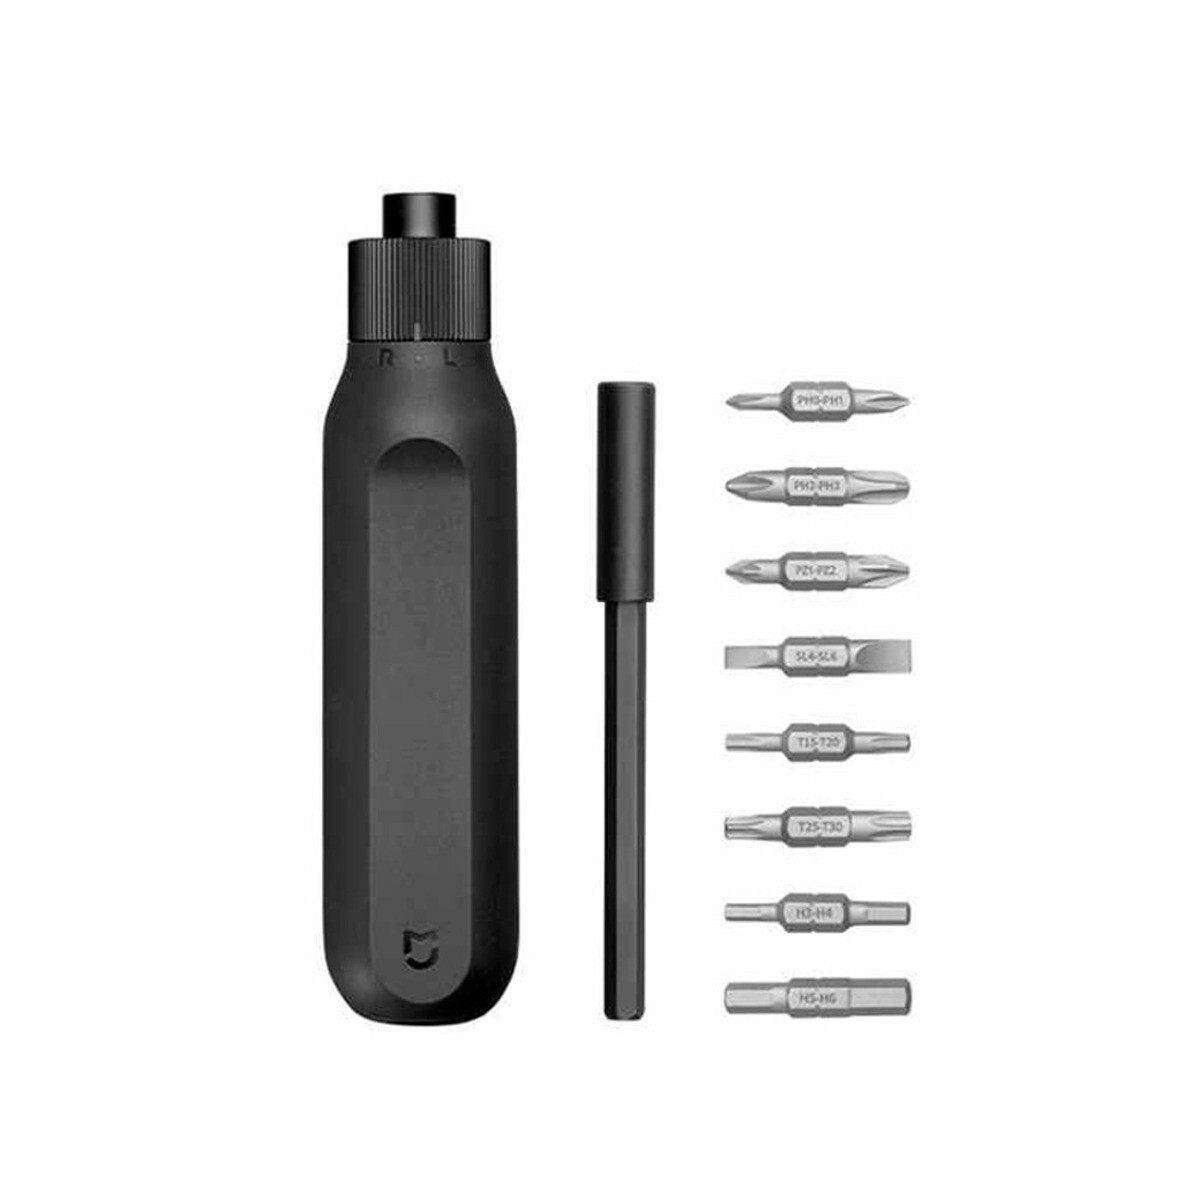 Destornillador xiaomi 16 en 1 - 16 puntas ratchet screwdriver - Negro 